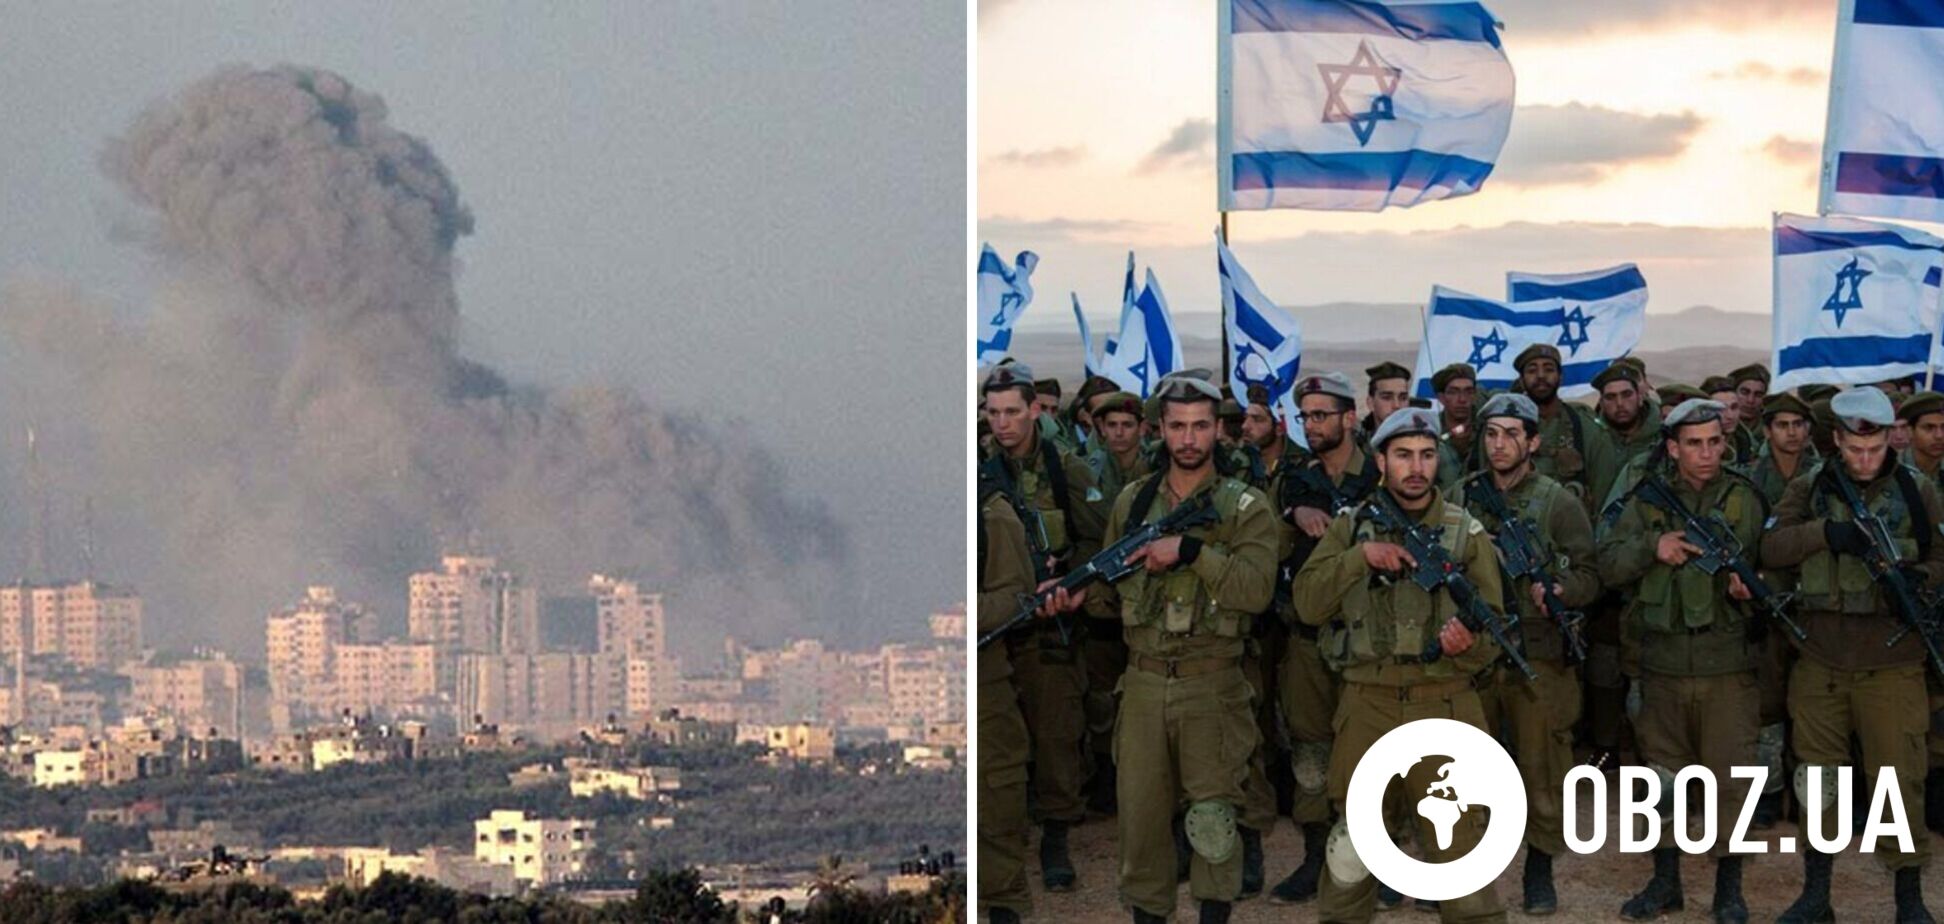 ЦАХАЛ заявил о взятии под контроль одного из военных лагерей ХАМАС в Газе, США отправили подлодку на Ближний Восток. Главные факты